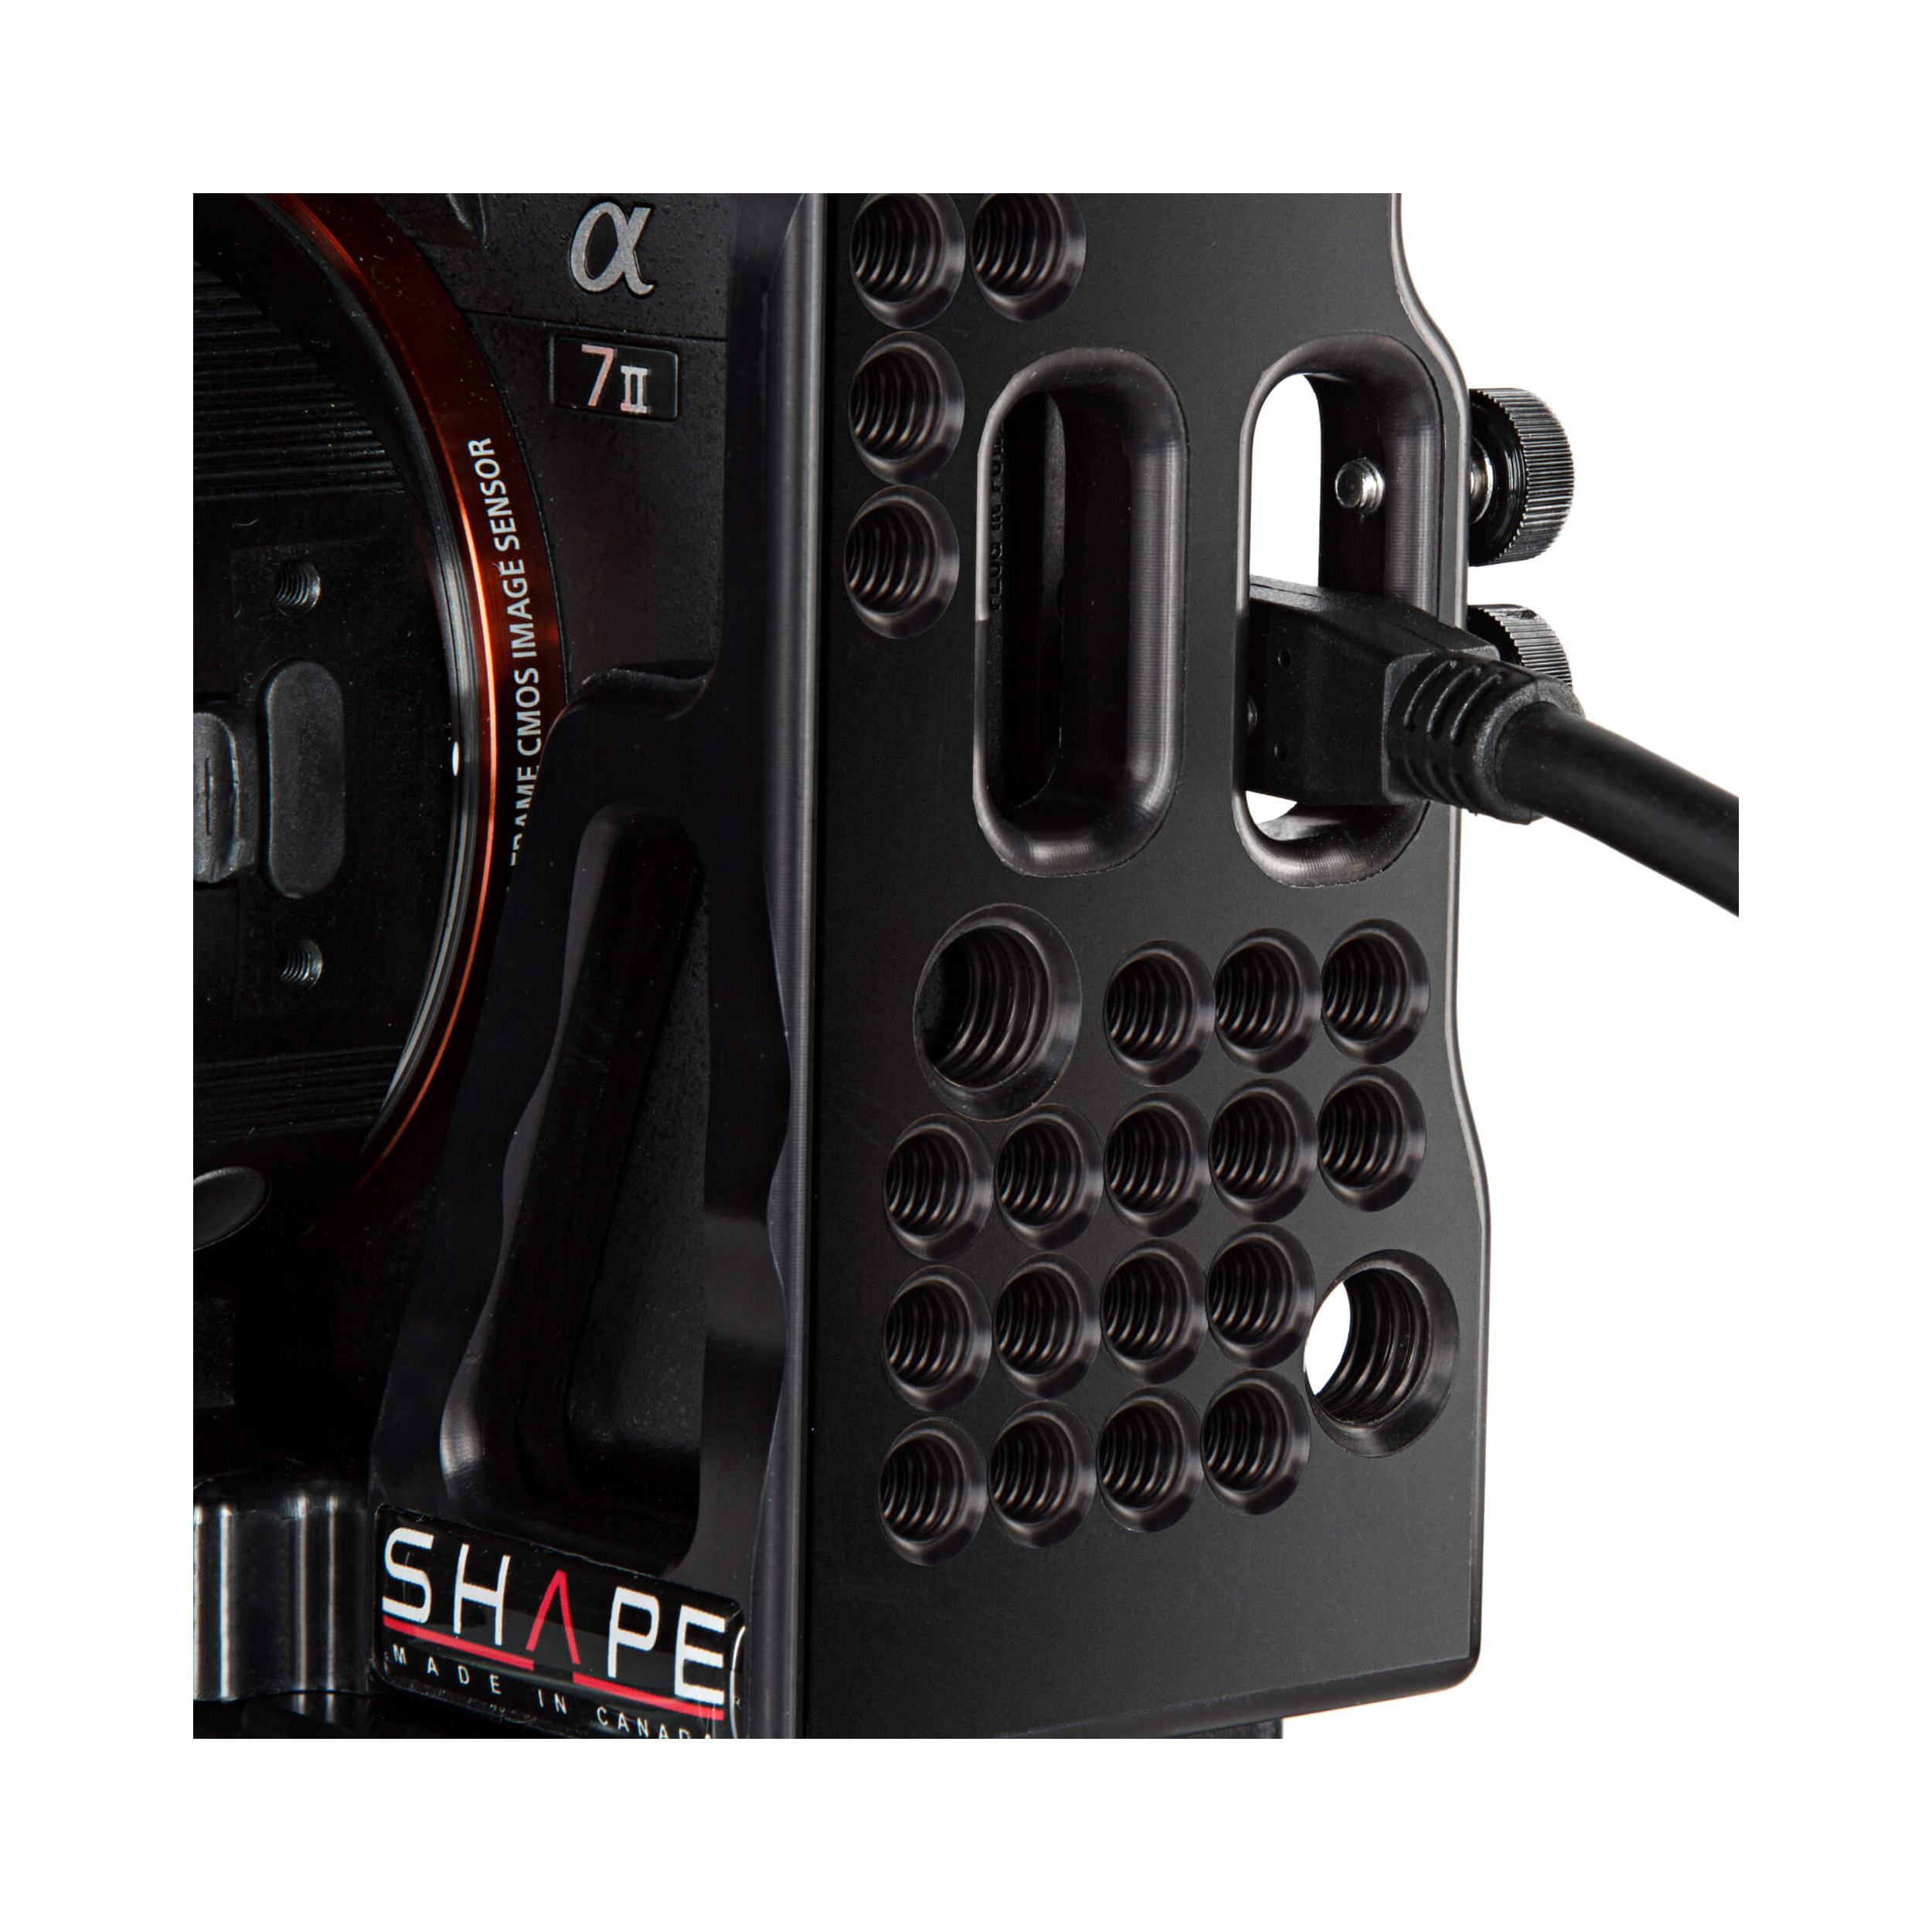 Shape Cinema Cage Kit pour Sony A7 II, A7S II et A7R II